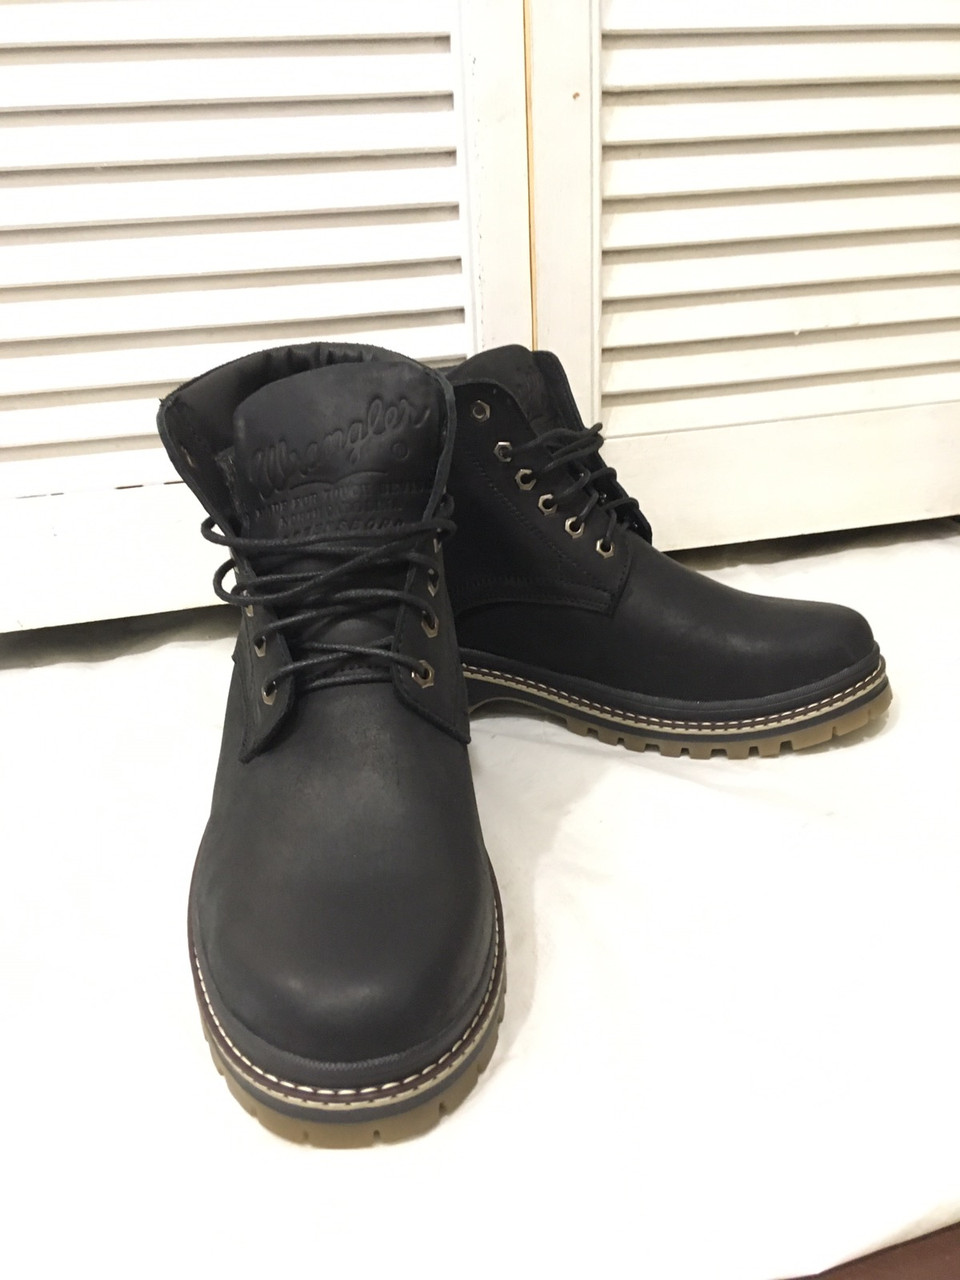 Супер Wrangler! Чоловічі зимові черевики чорні натуральна шкіра взуття в стилі Вранглер чоботи